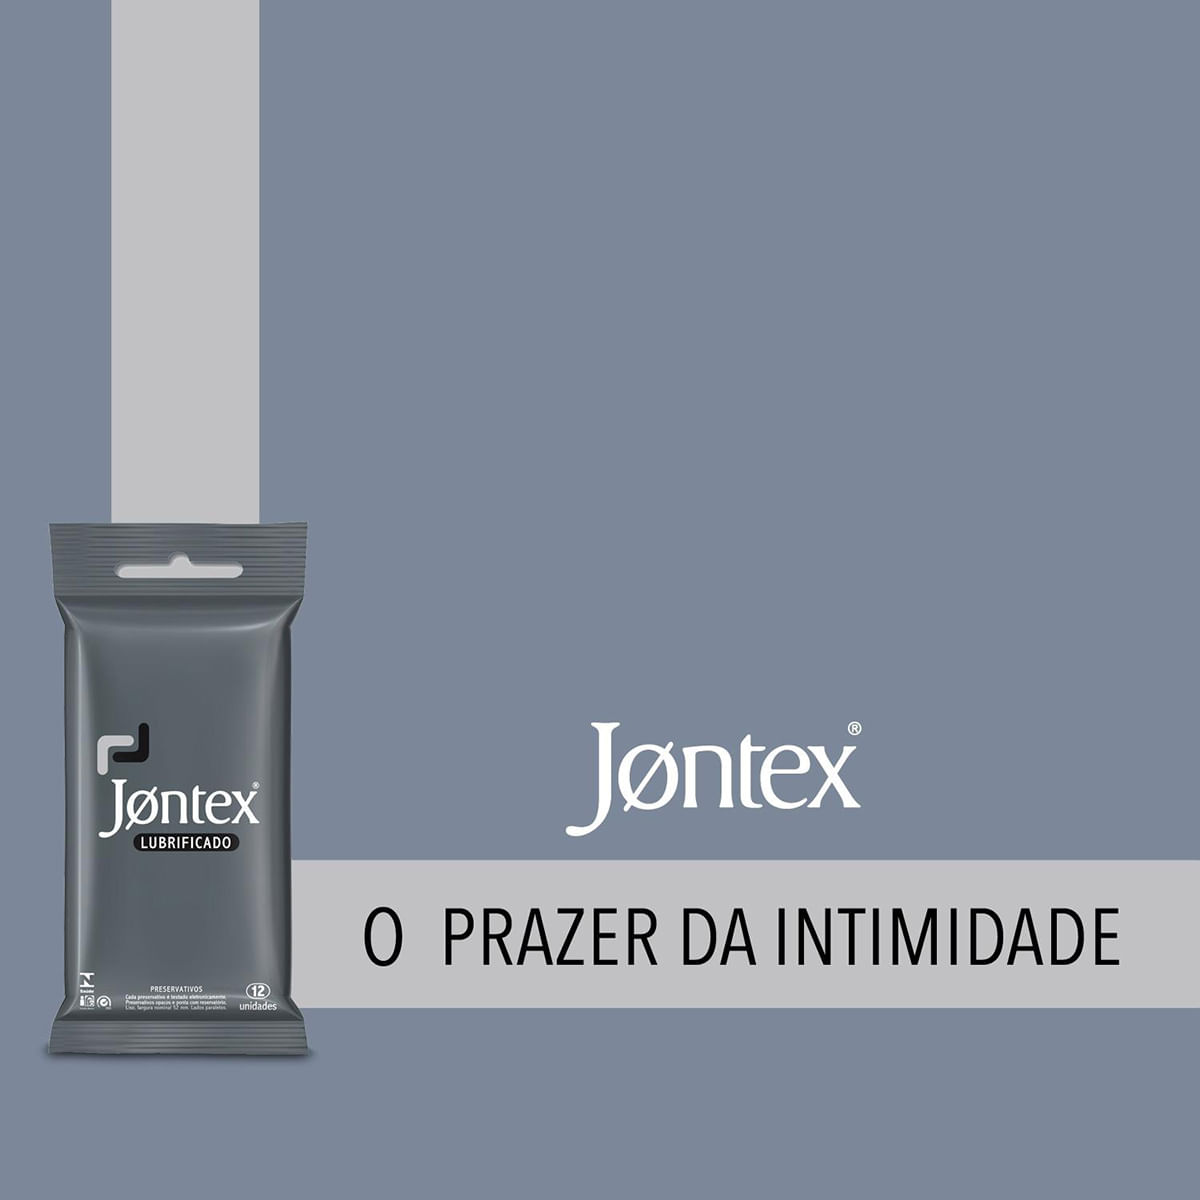 Preservativos Lubrificados com 12 unidades Jontex